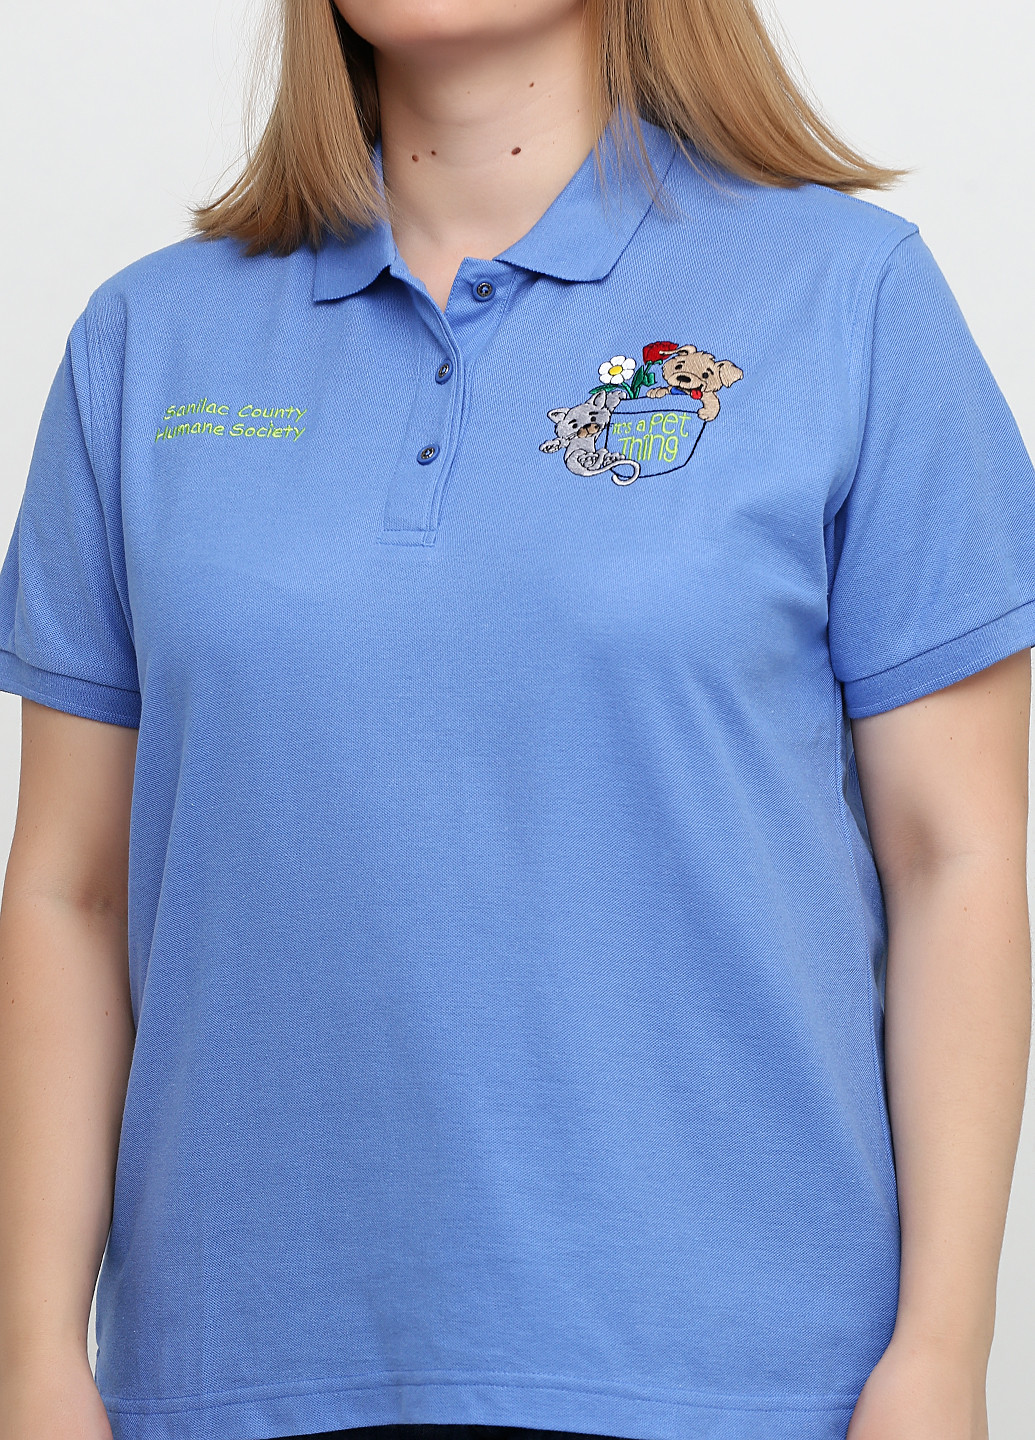 Васильковая женская футболка-поло Port Authority с рисунком